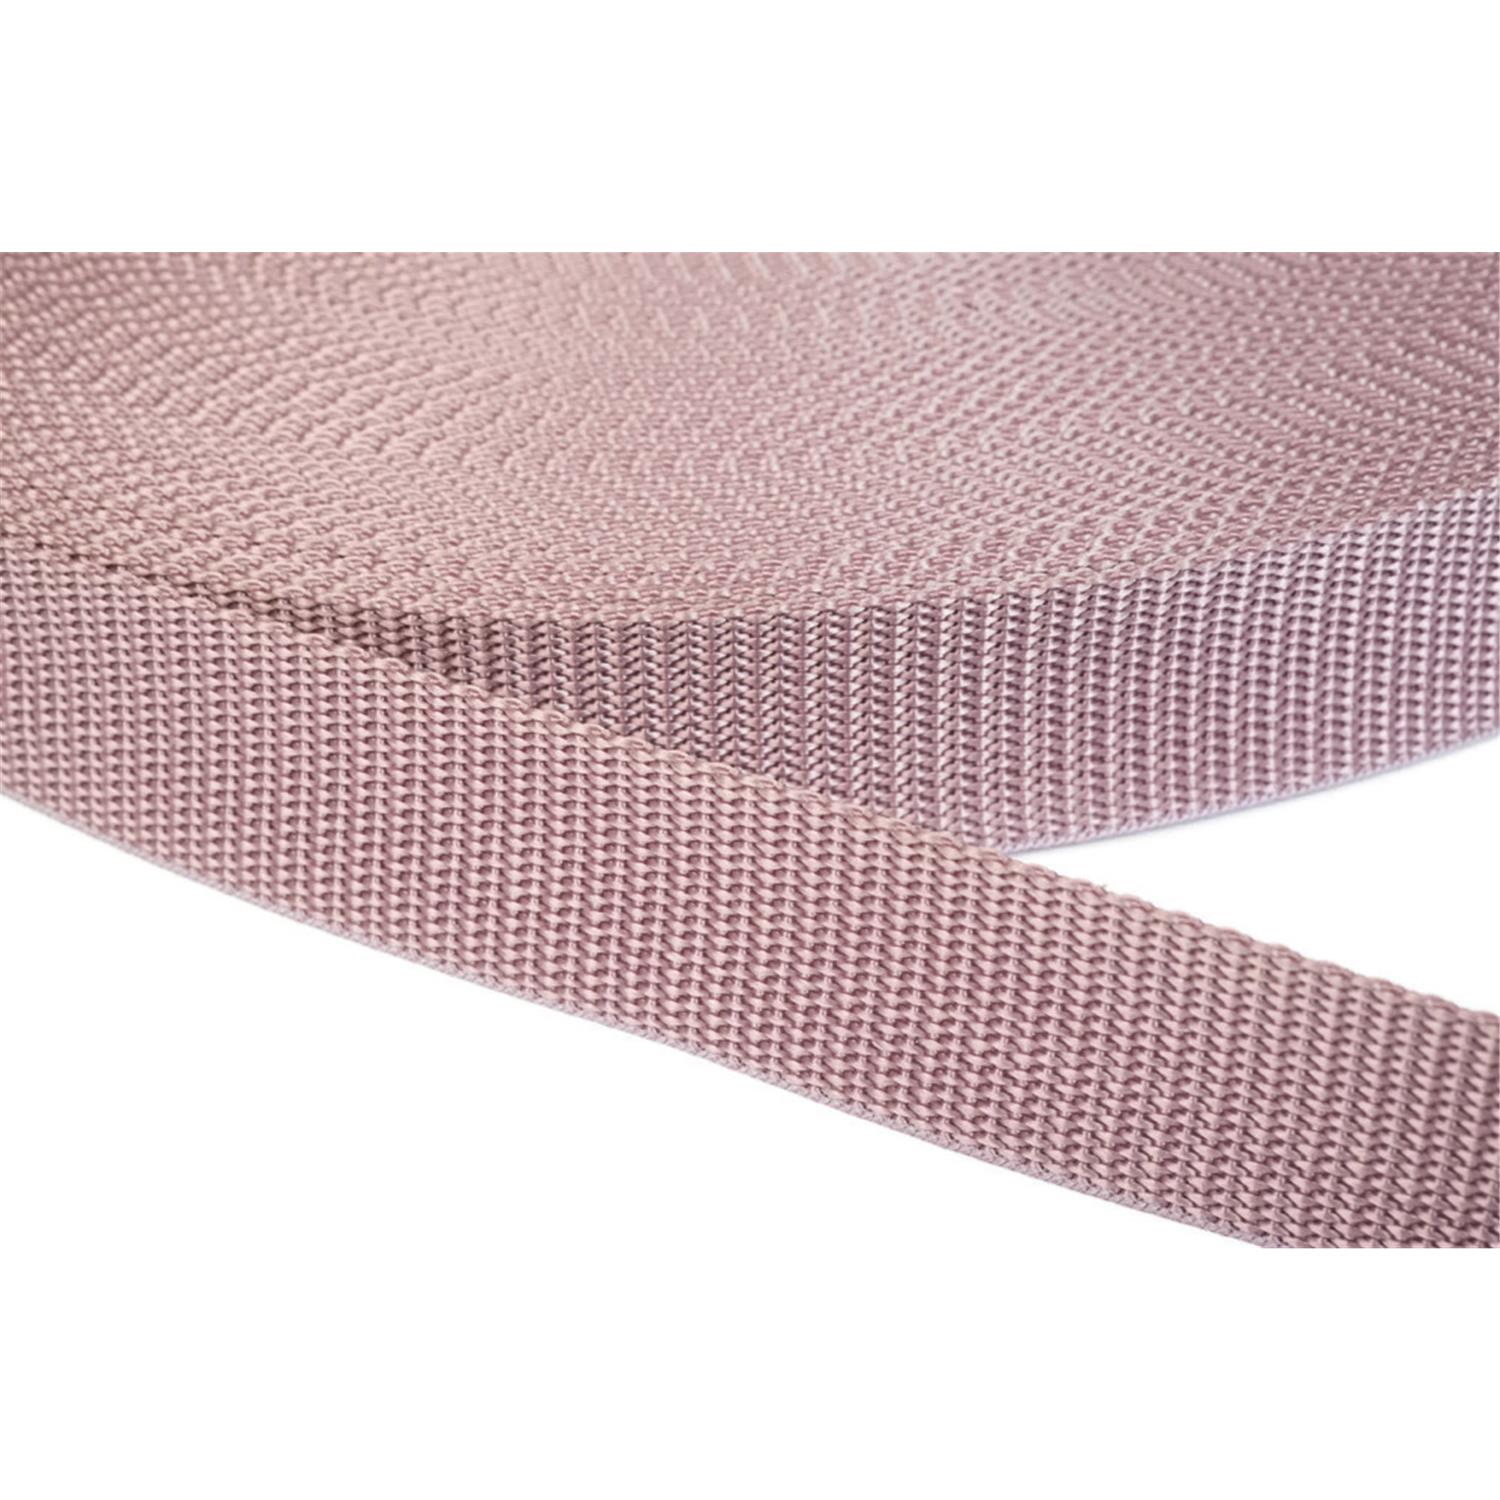 Gurtband 25mm breit aus Polypropylen in 41 Farben 15 - altrosa 6 Meter